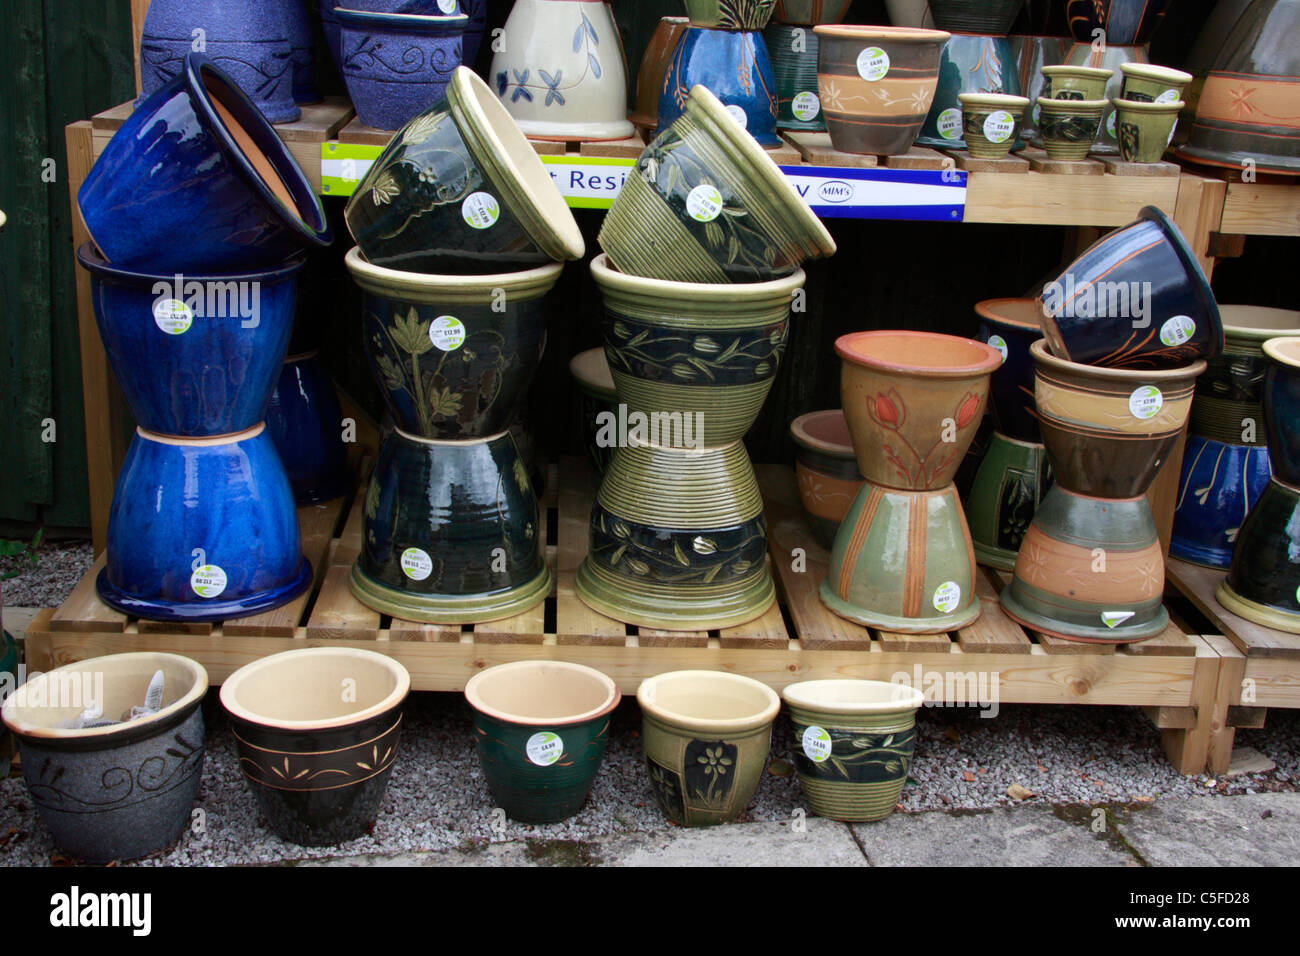 Impianto ceramico pentole e contenitori in centro giardino. Foto Stock